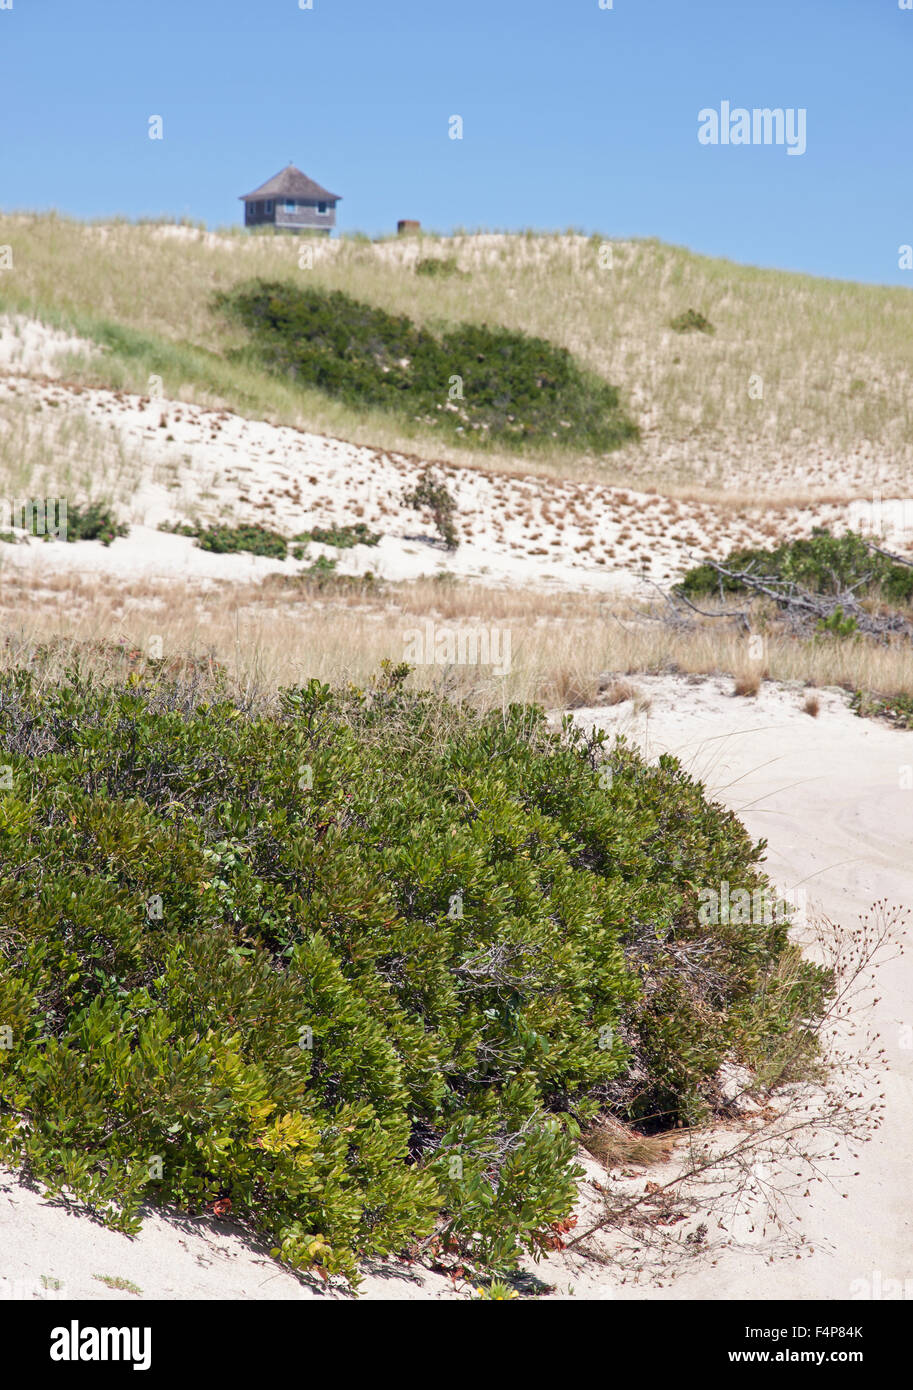 Provinz Ländereien am Cape Cod National Seashore.  Sanddüne Vegetation besteht aus Kiefer & Eiche Bäume. Sträucher sind Pflaume & Beere. Stockfoto